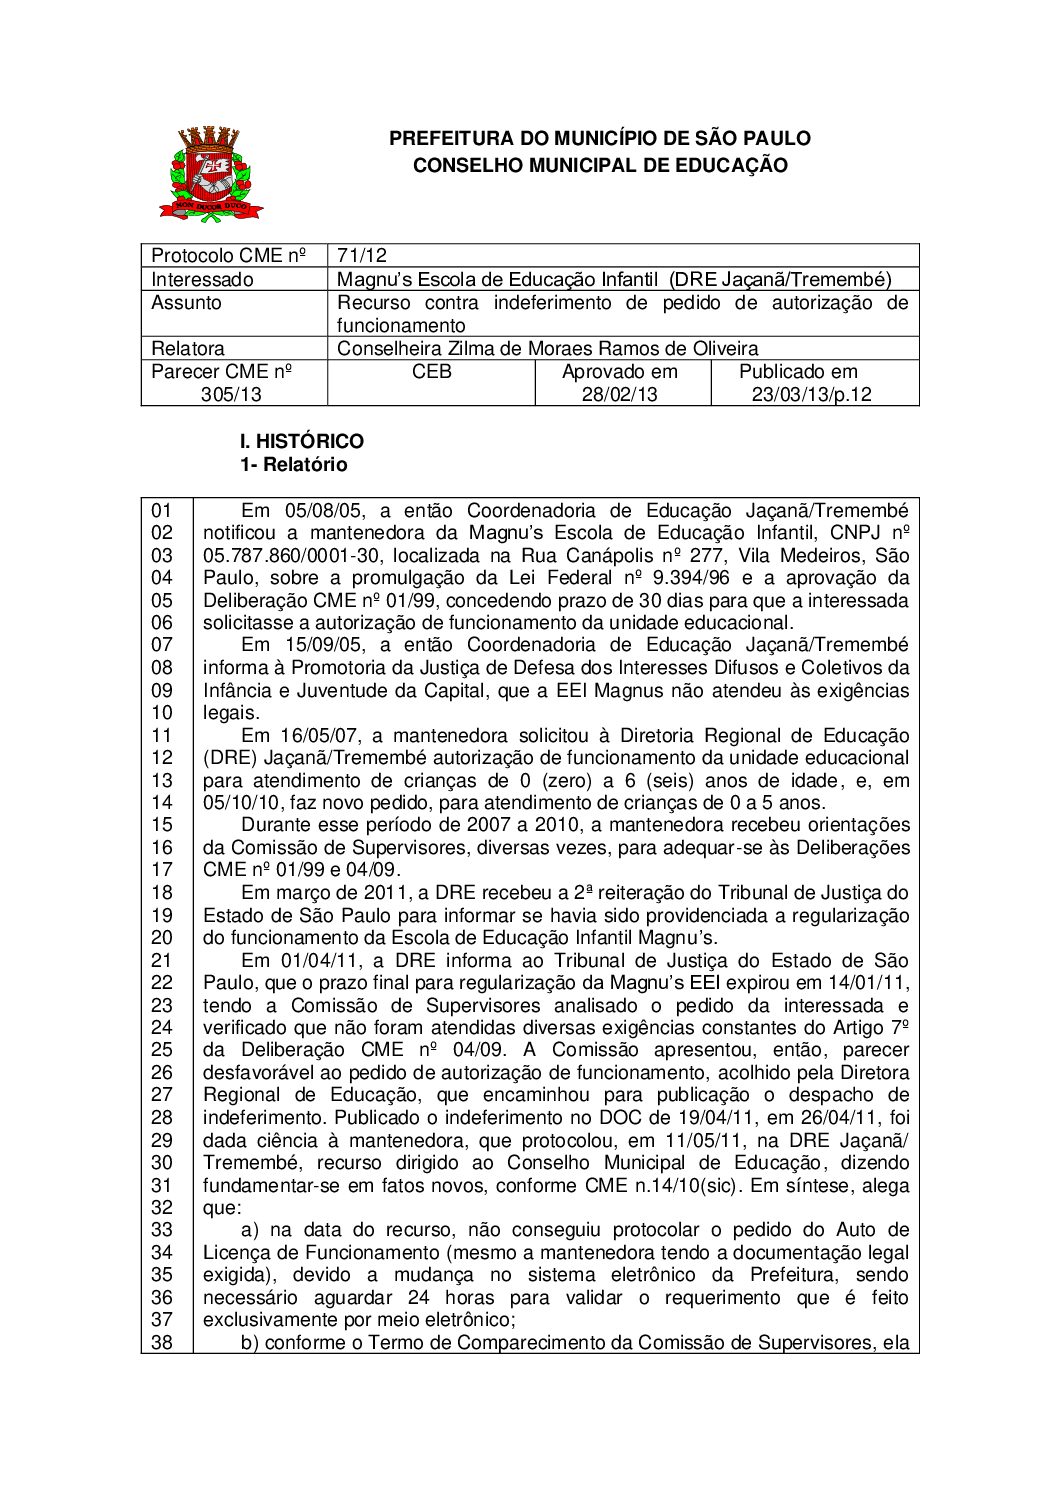 Parecer CME nº 305/2013 - Magnu’s Escola de Educação Infantil  (DRE Jaçanã/Tremembé) - Recurso contra indeferimento de pedido de autorização de funcionamento 